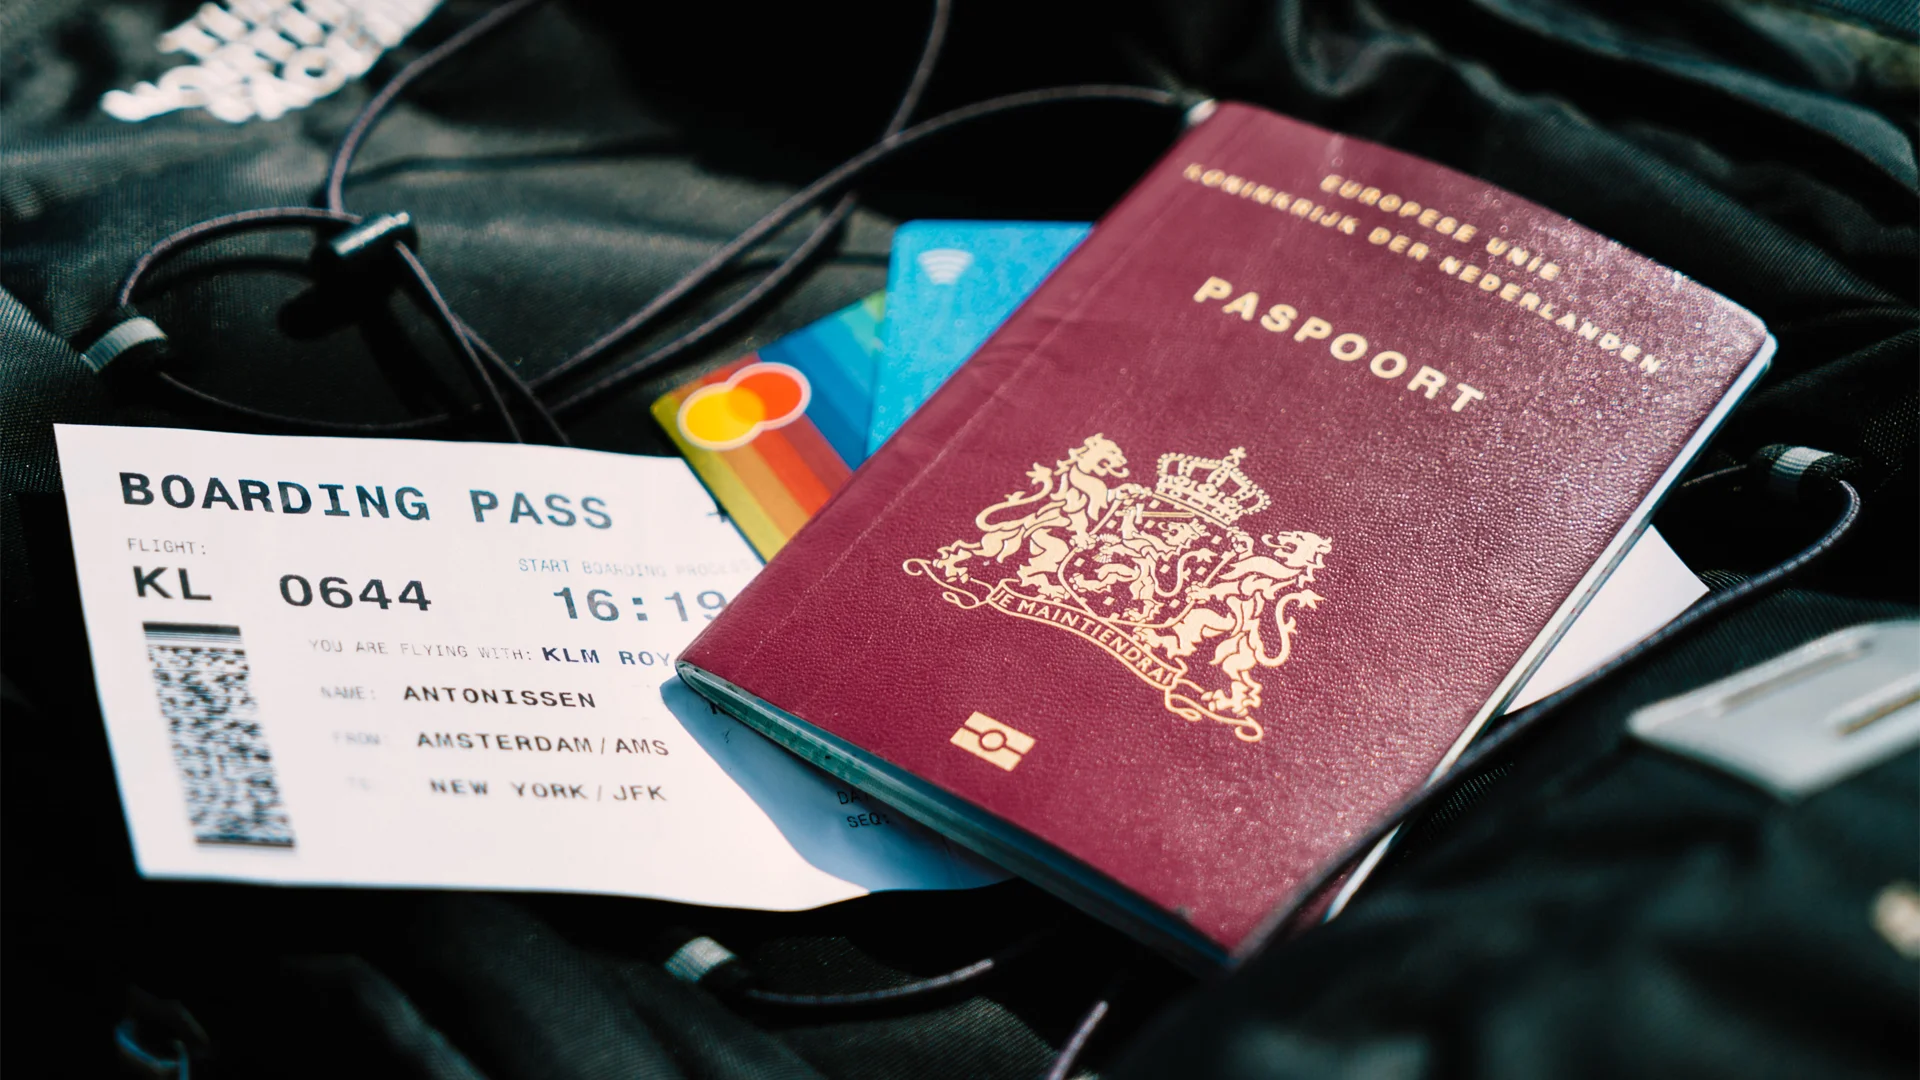 UK Passport and boarding pass